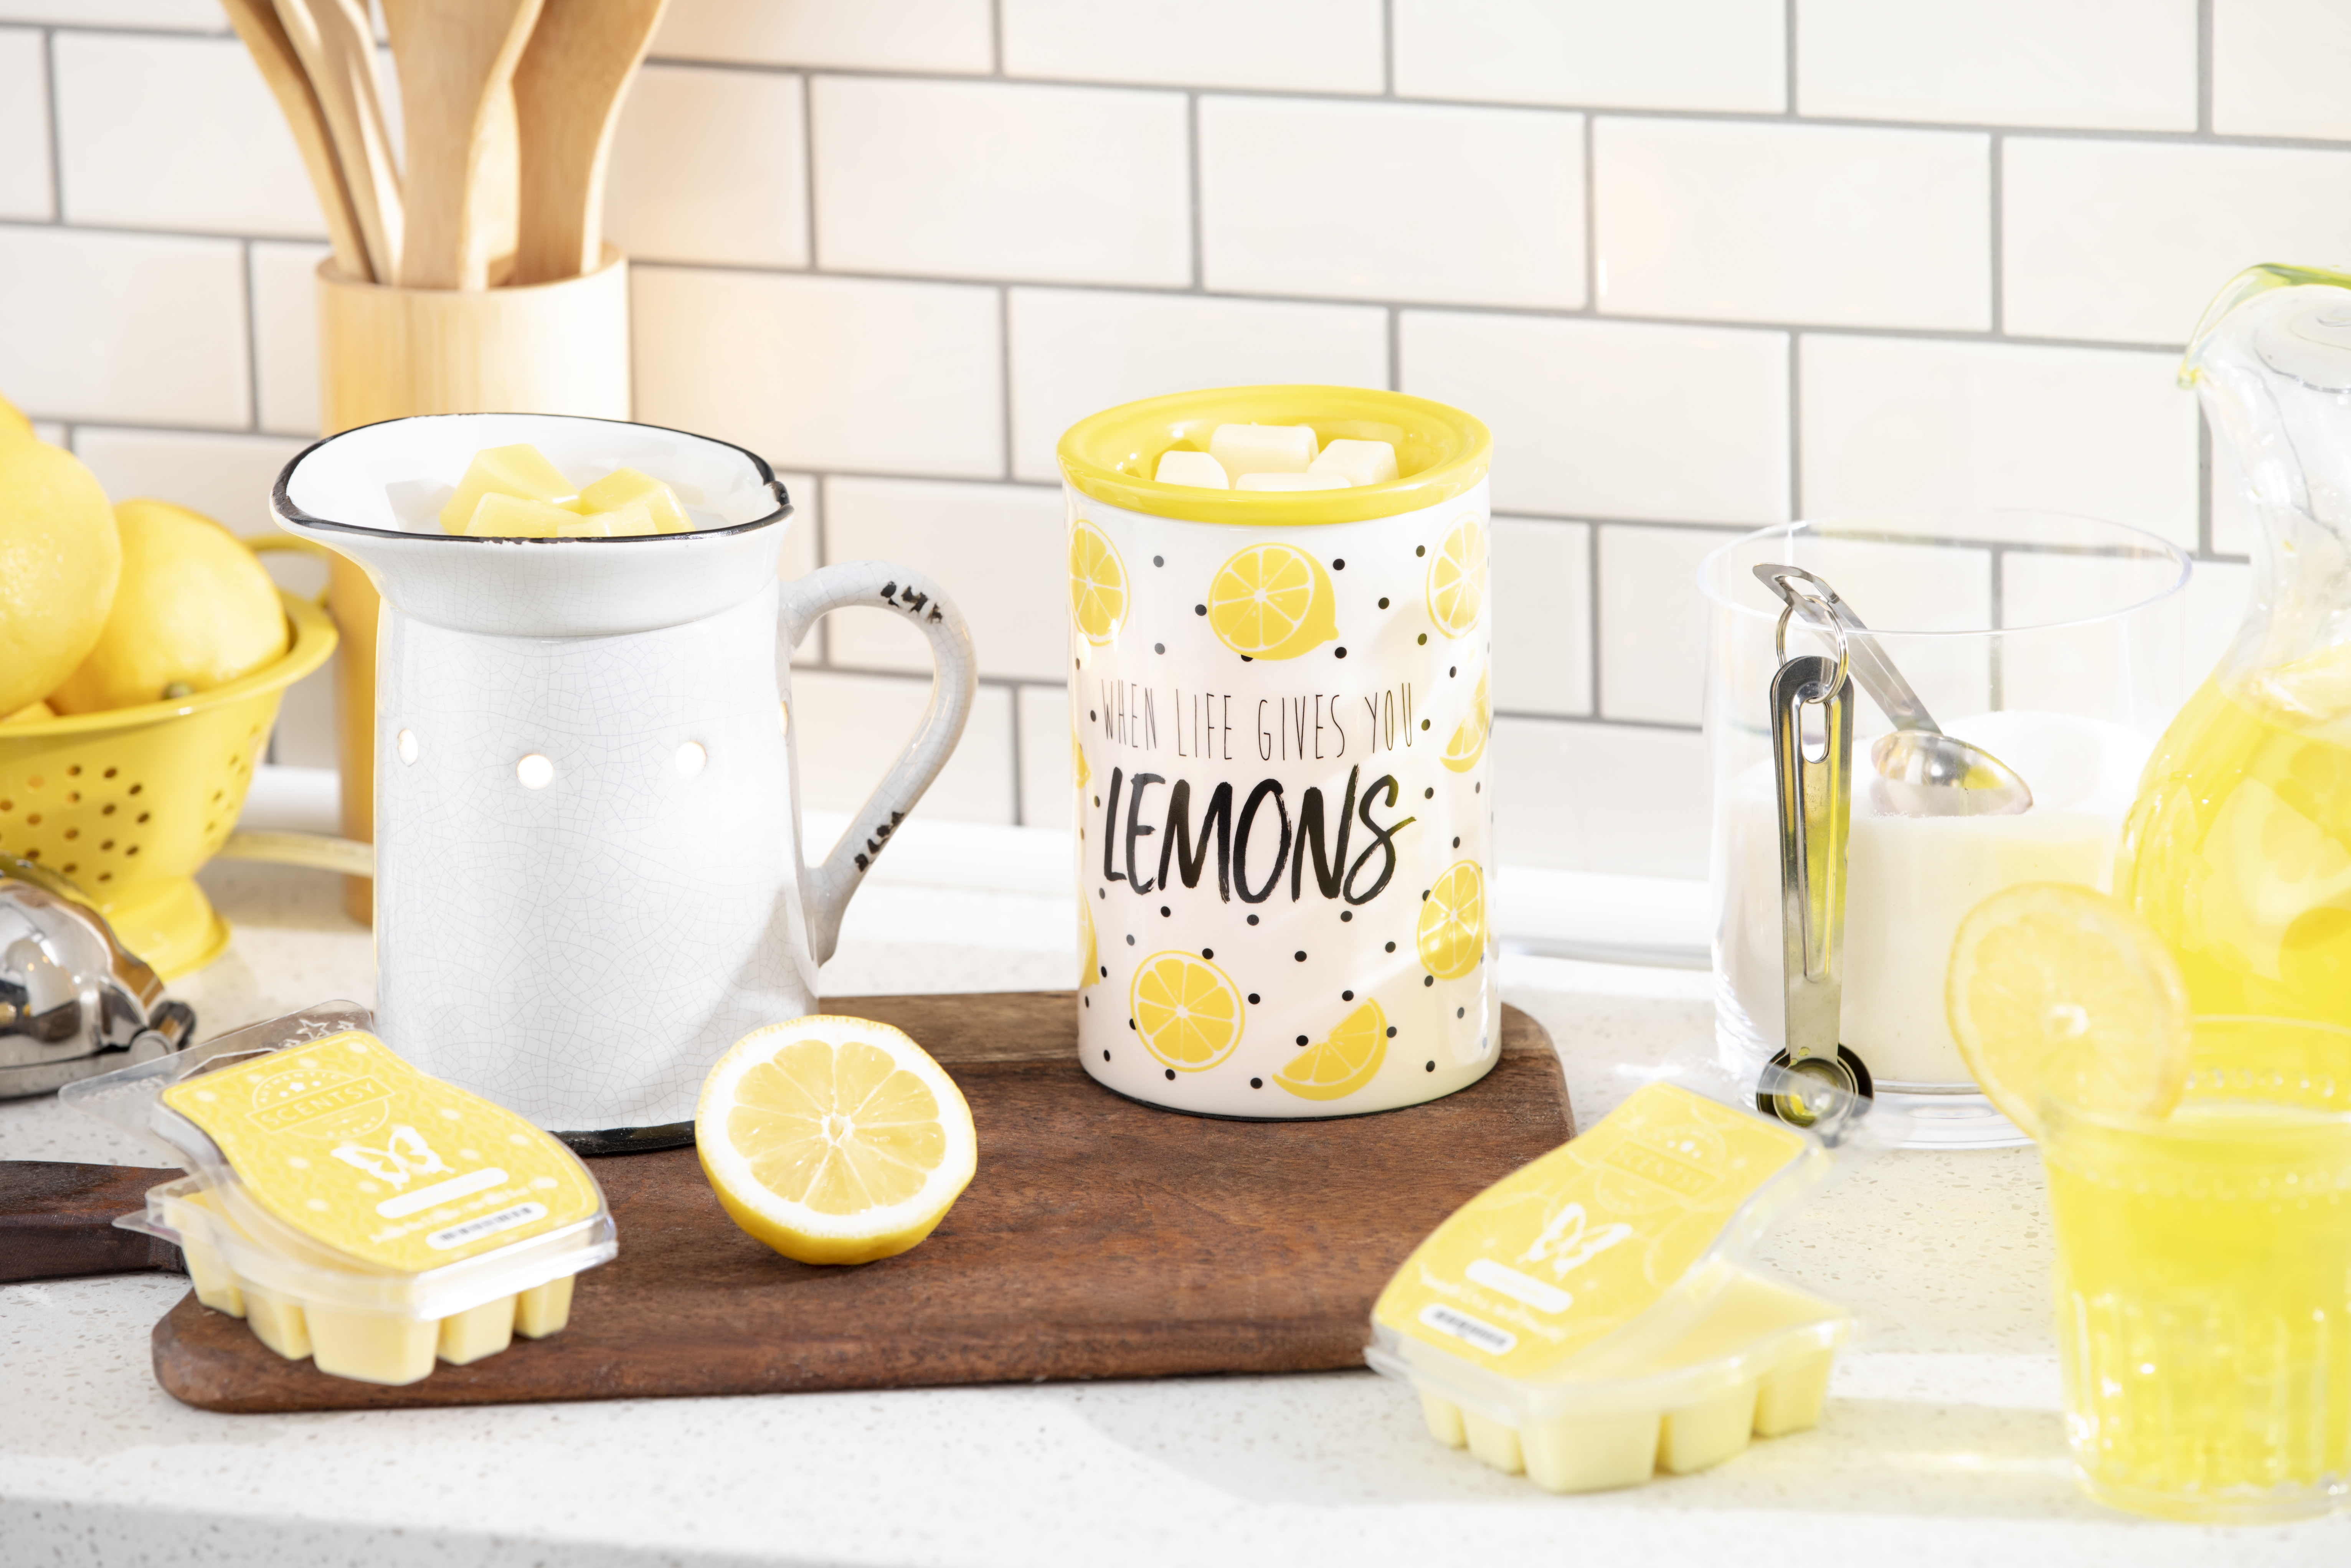 For the love of lemons